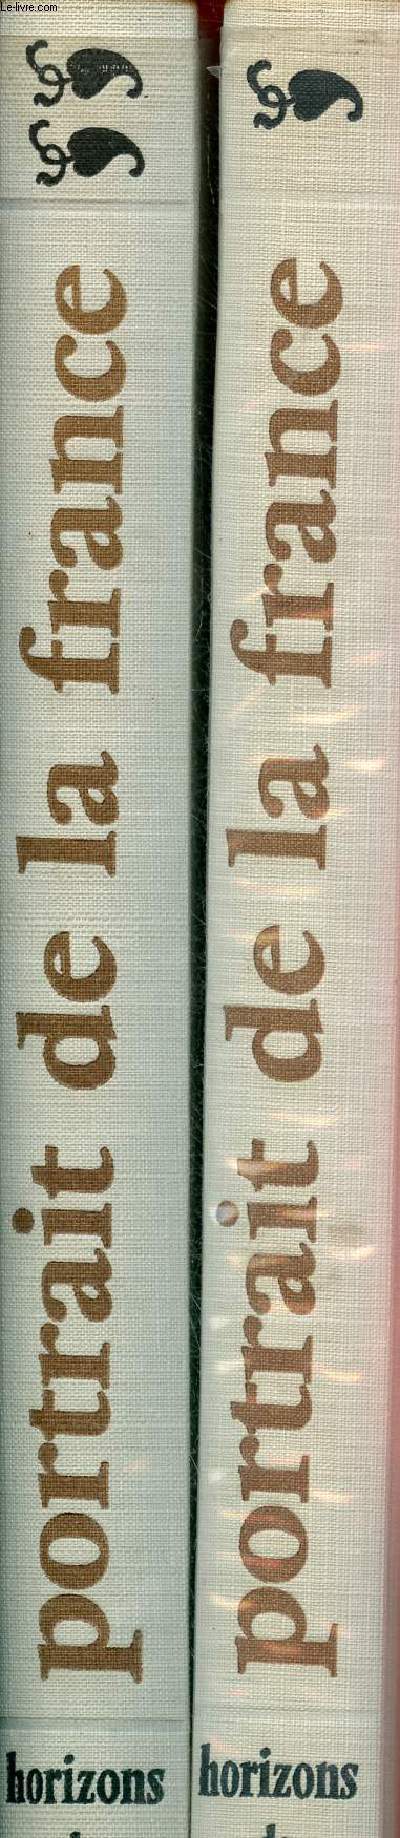 Portrait de la France - En 2 tomes (2 volumes) - Tome 1 + Tome 2.